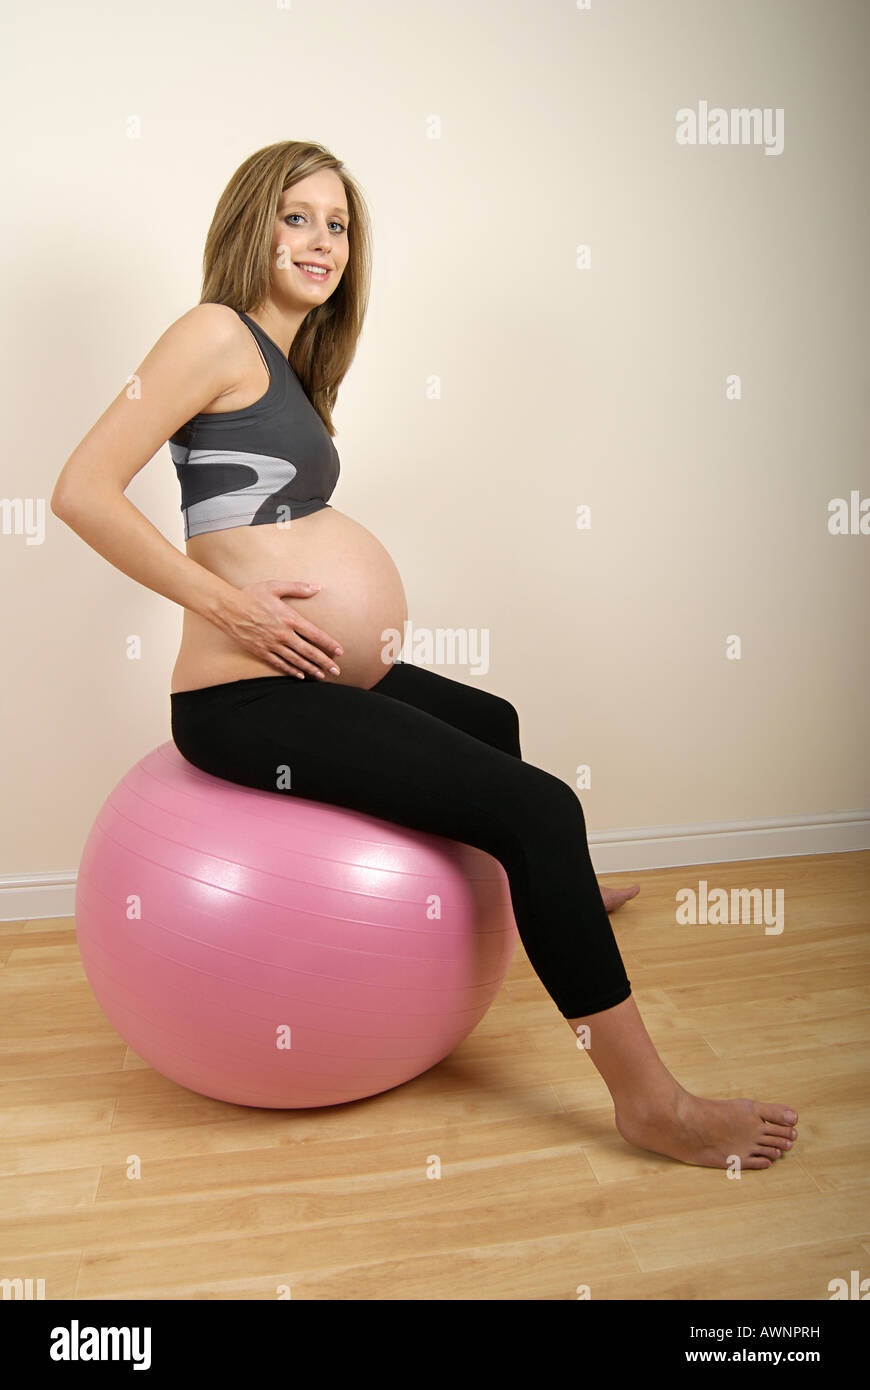 Schwangere Frau auf Gymnastikball Stockfotografie - Alamy